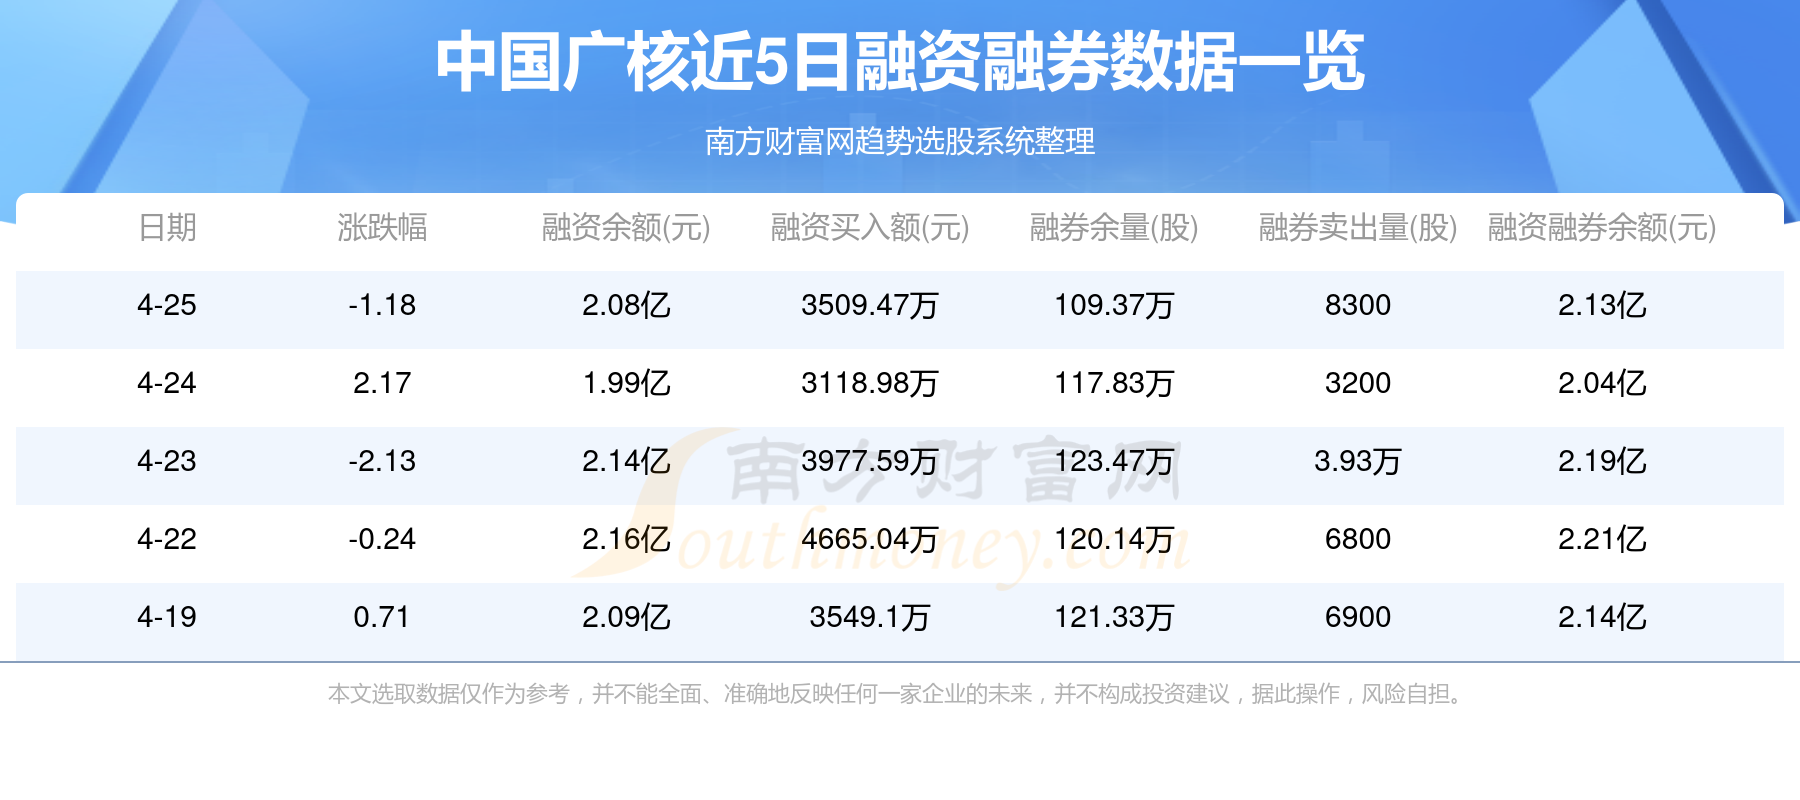 4月26日:中国广核(003816)资金流向一览表